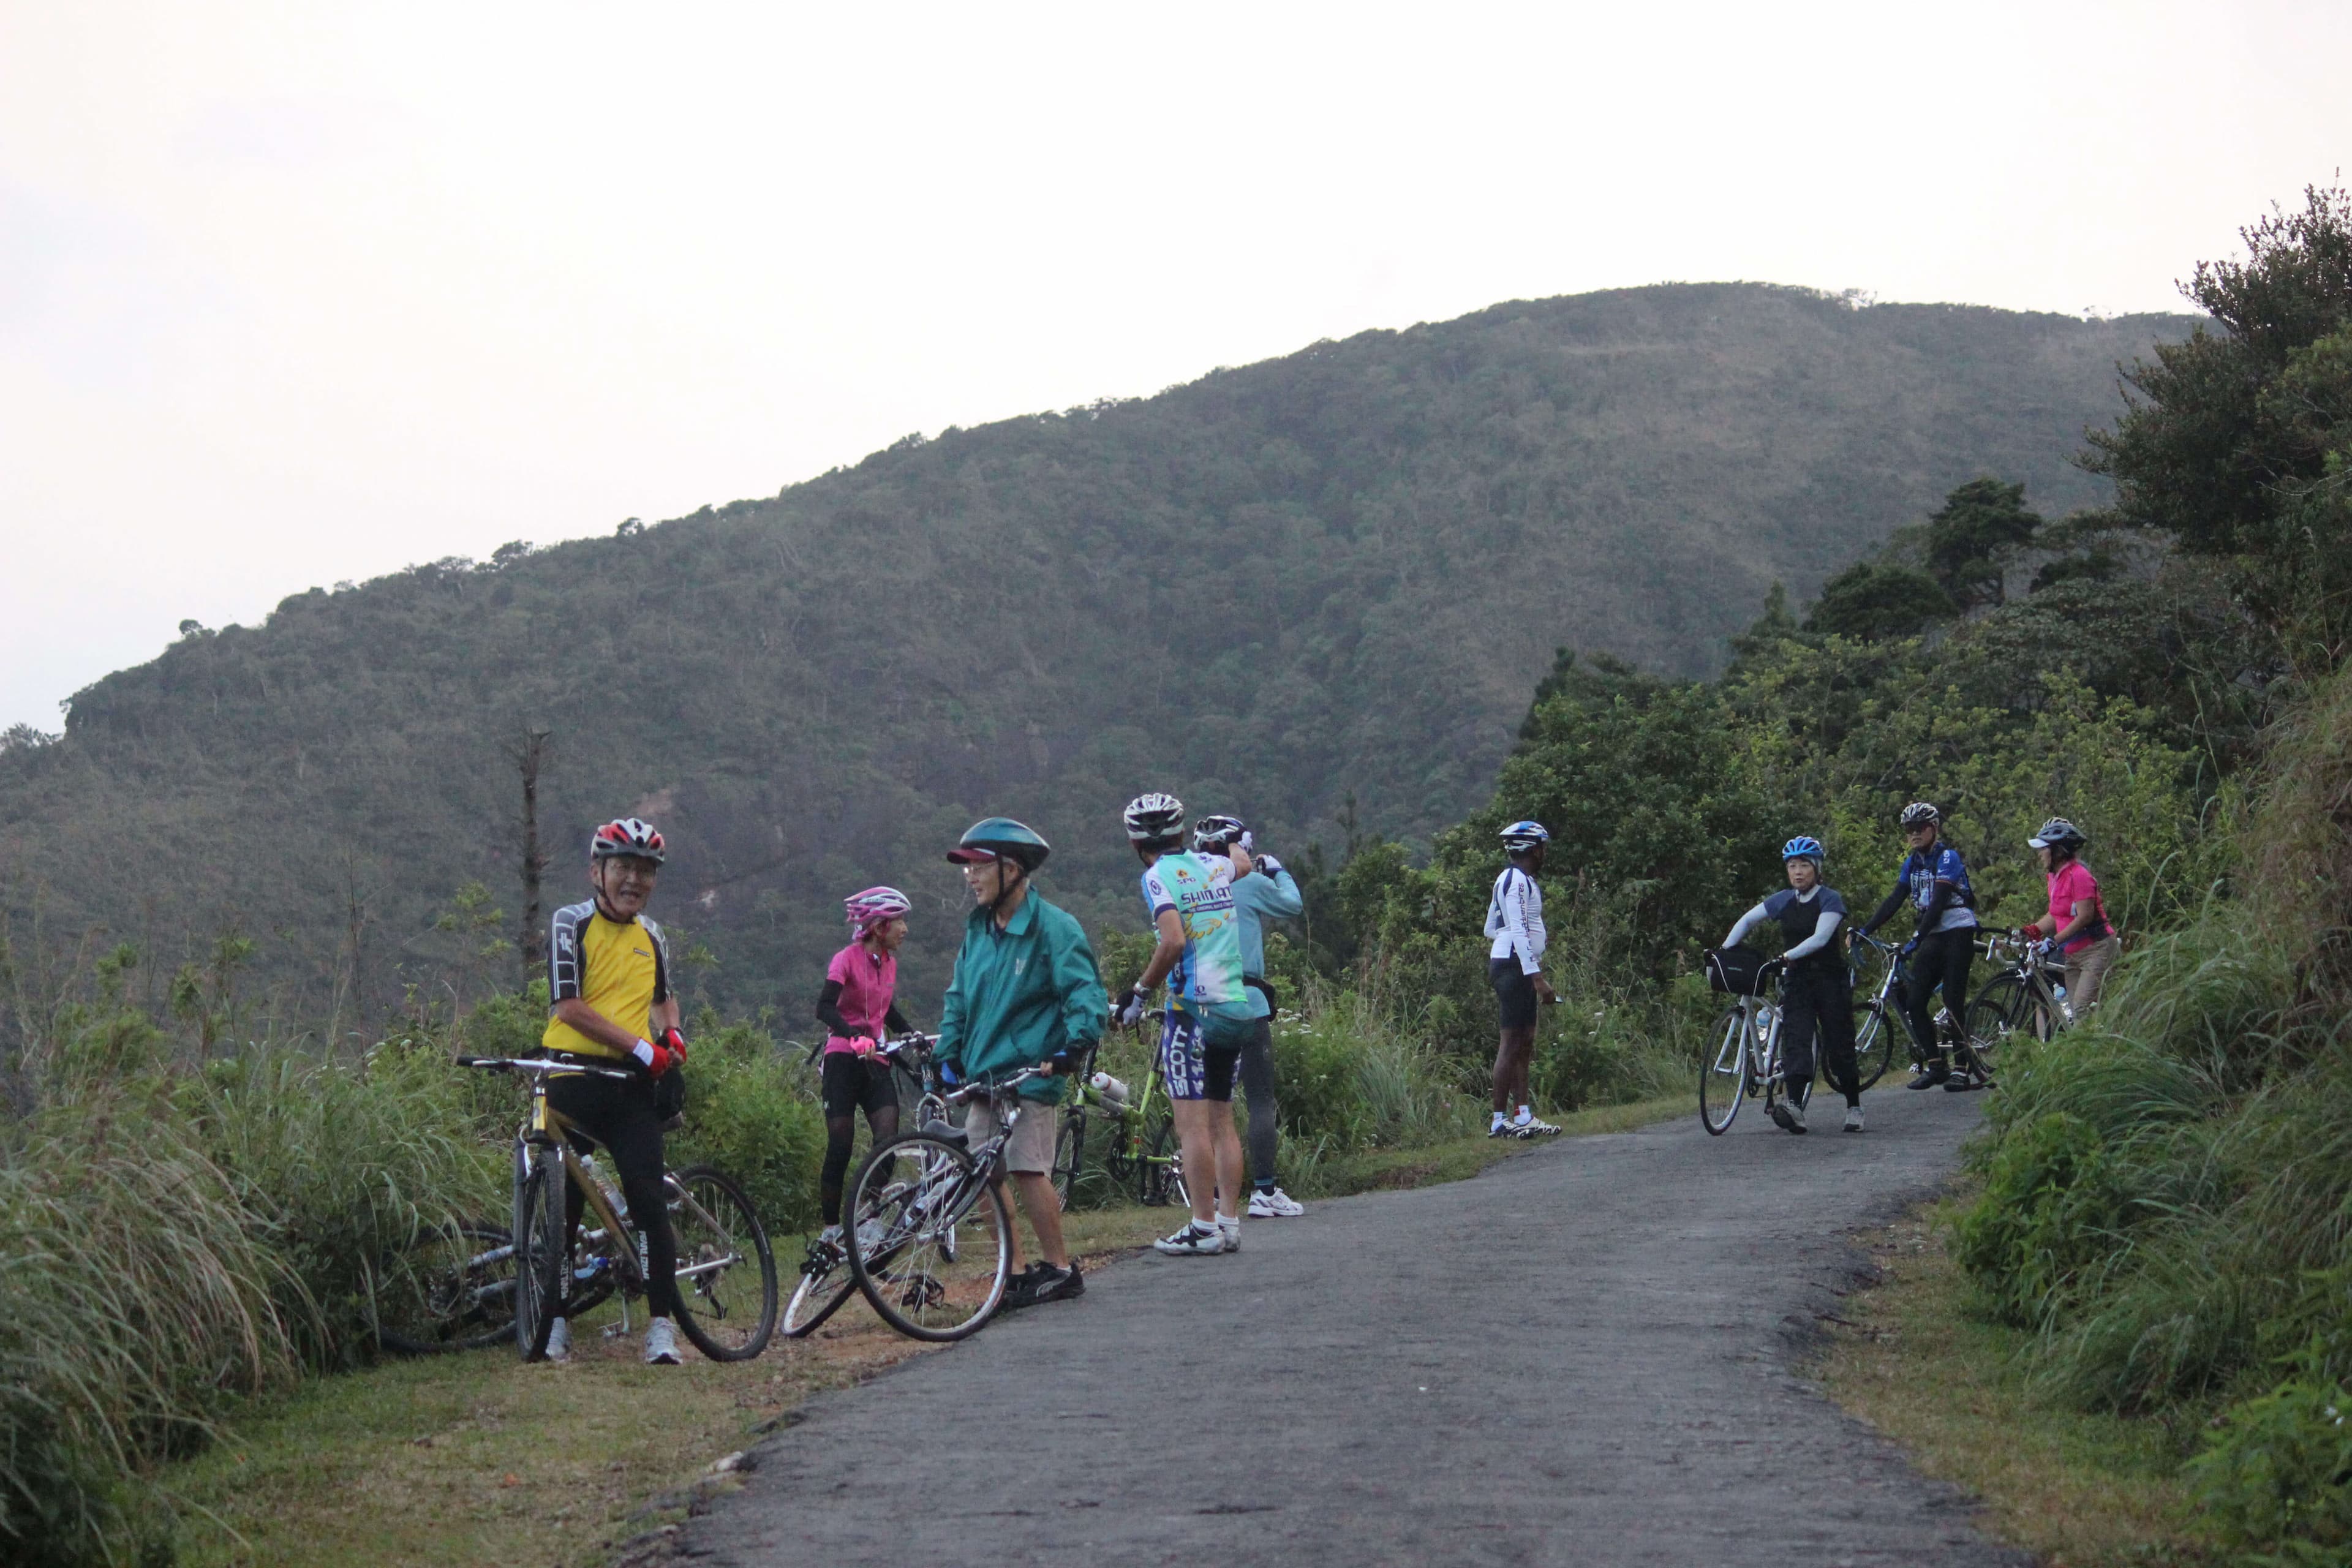 مجموعة من راكبي الدراجات يشاهدون مشاهد جميلة أثناء ركوب الدراجات إلى ميمور في سريلانكا